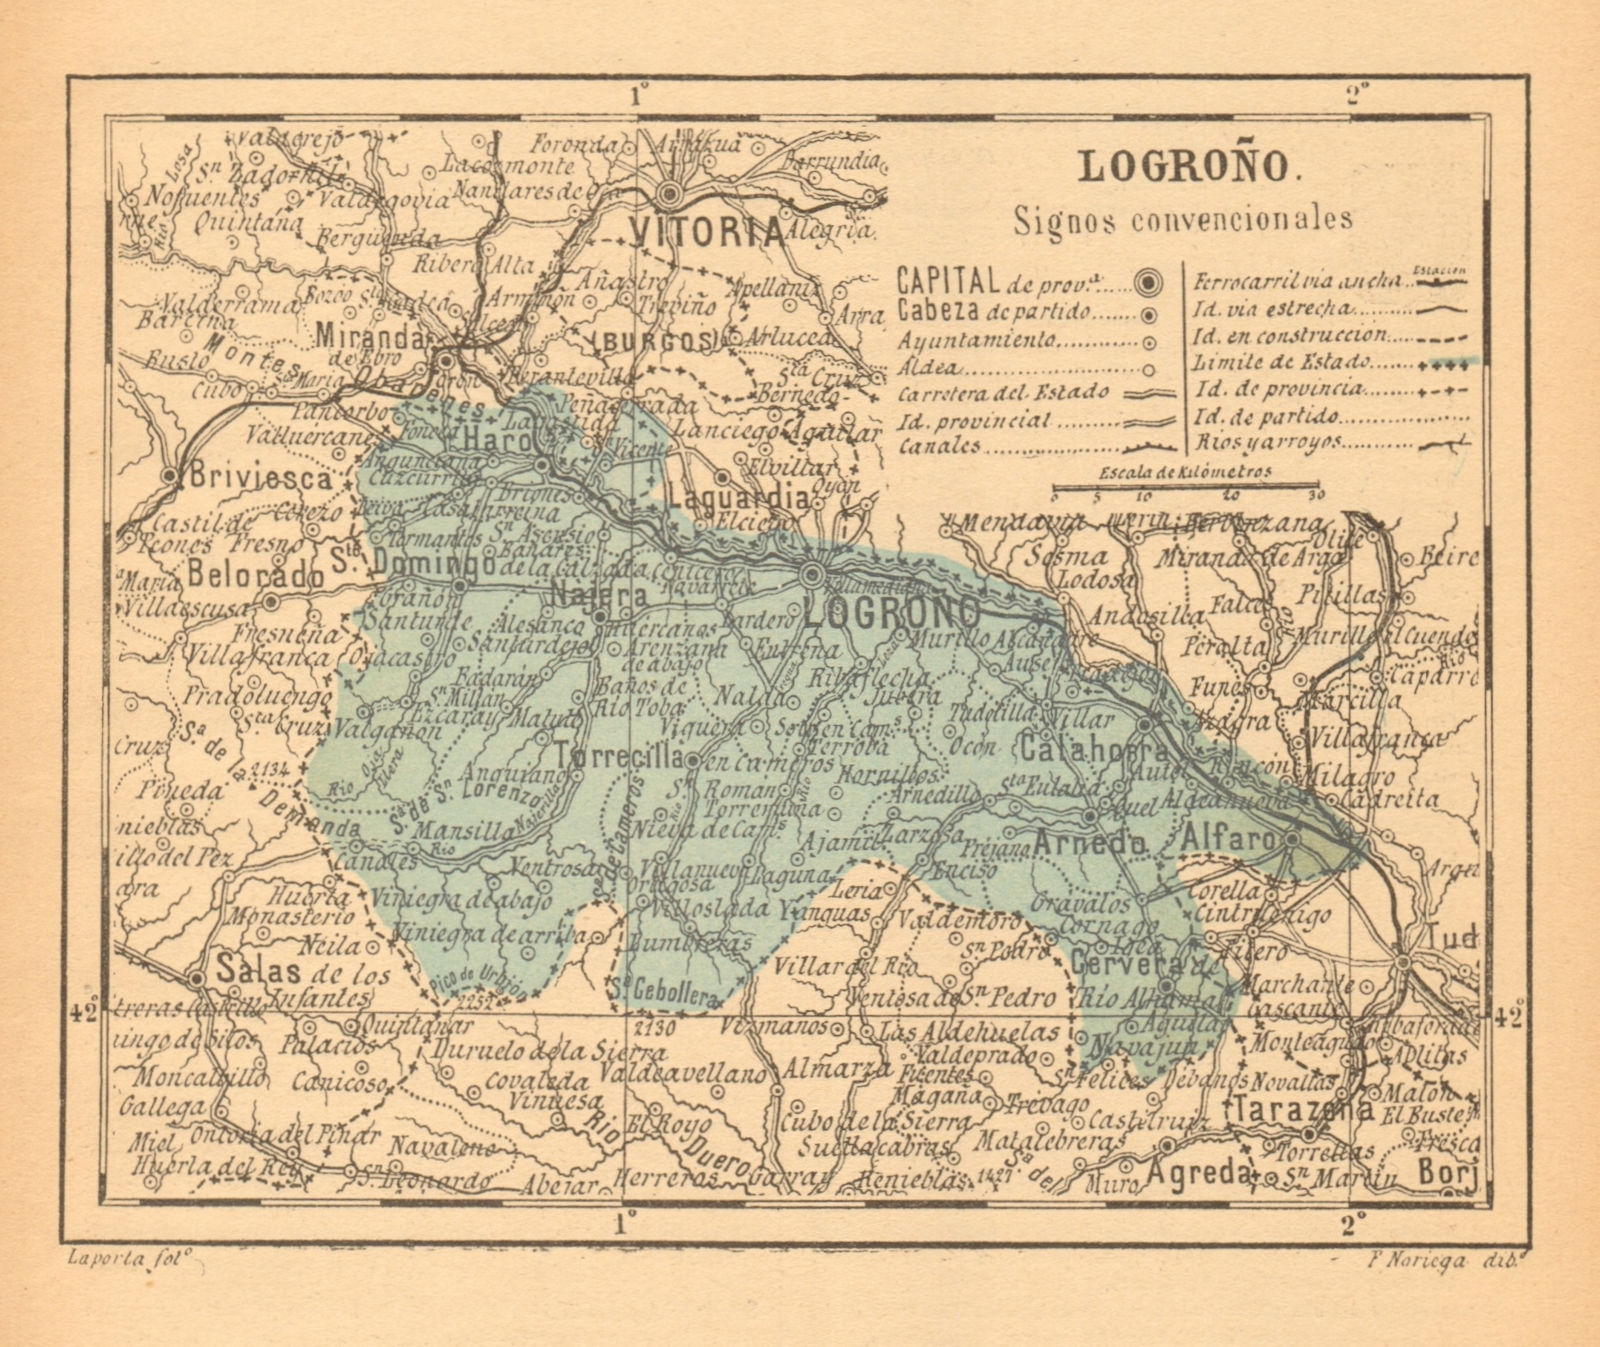 LA RIOJA. Logroño Logrono. Mapa antiguo de la provincia 1914 old antique